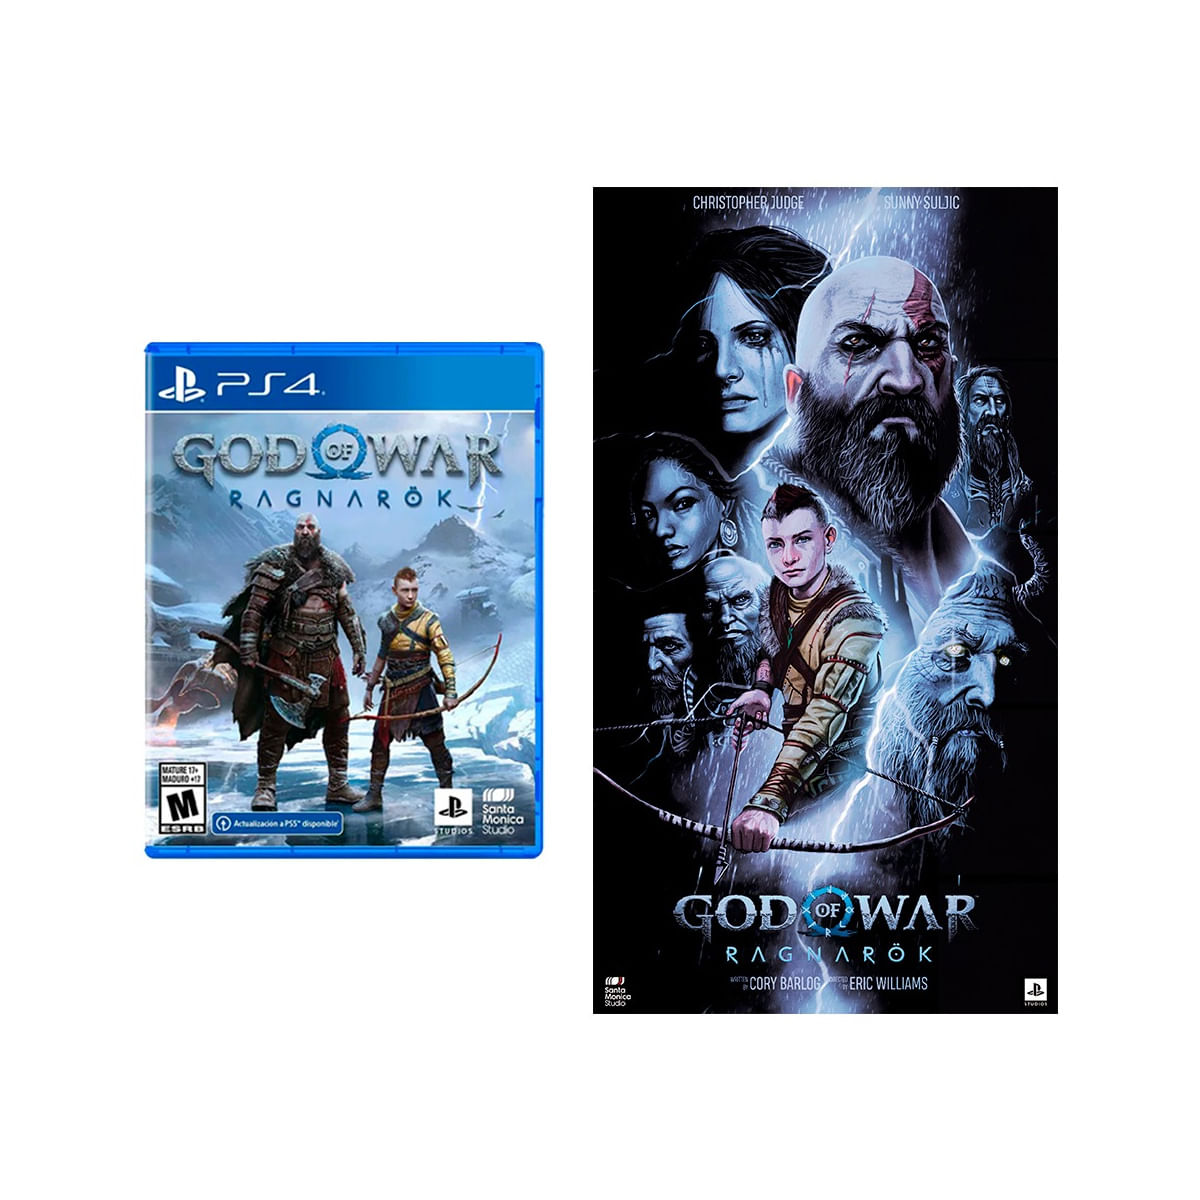 God of War Ragnarok Playstation 4 + Poster